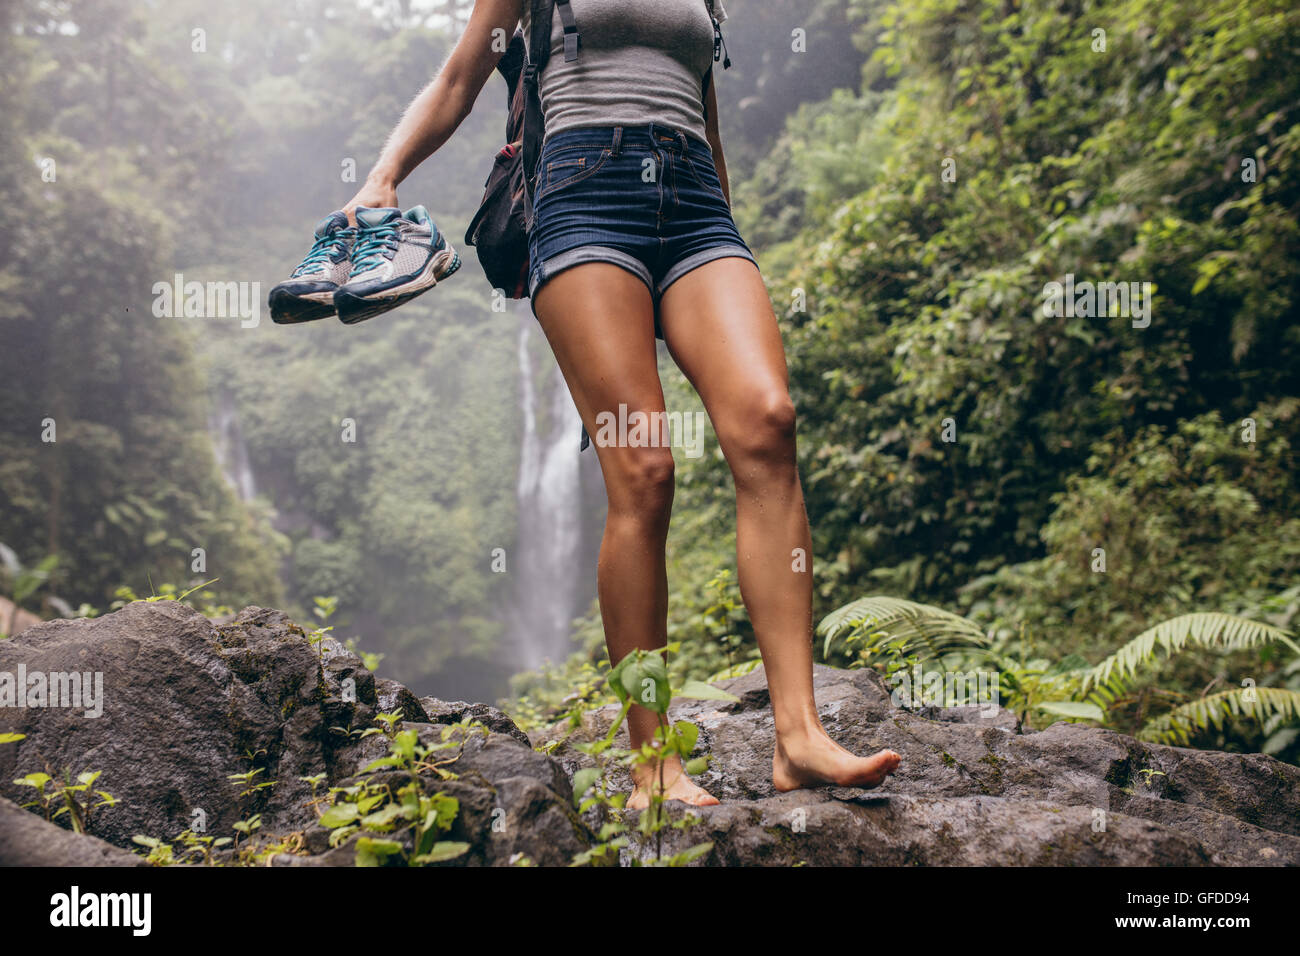 Niedrigen Winkel Blick der jungen Frau zu Fuß den Berg hinunter barfuß. Weibliche Wanderer barfuß auf Rock mit Wasserfall im backgr Stockfoto